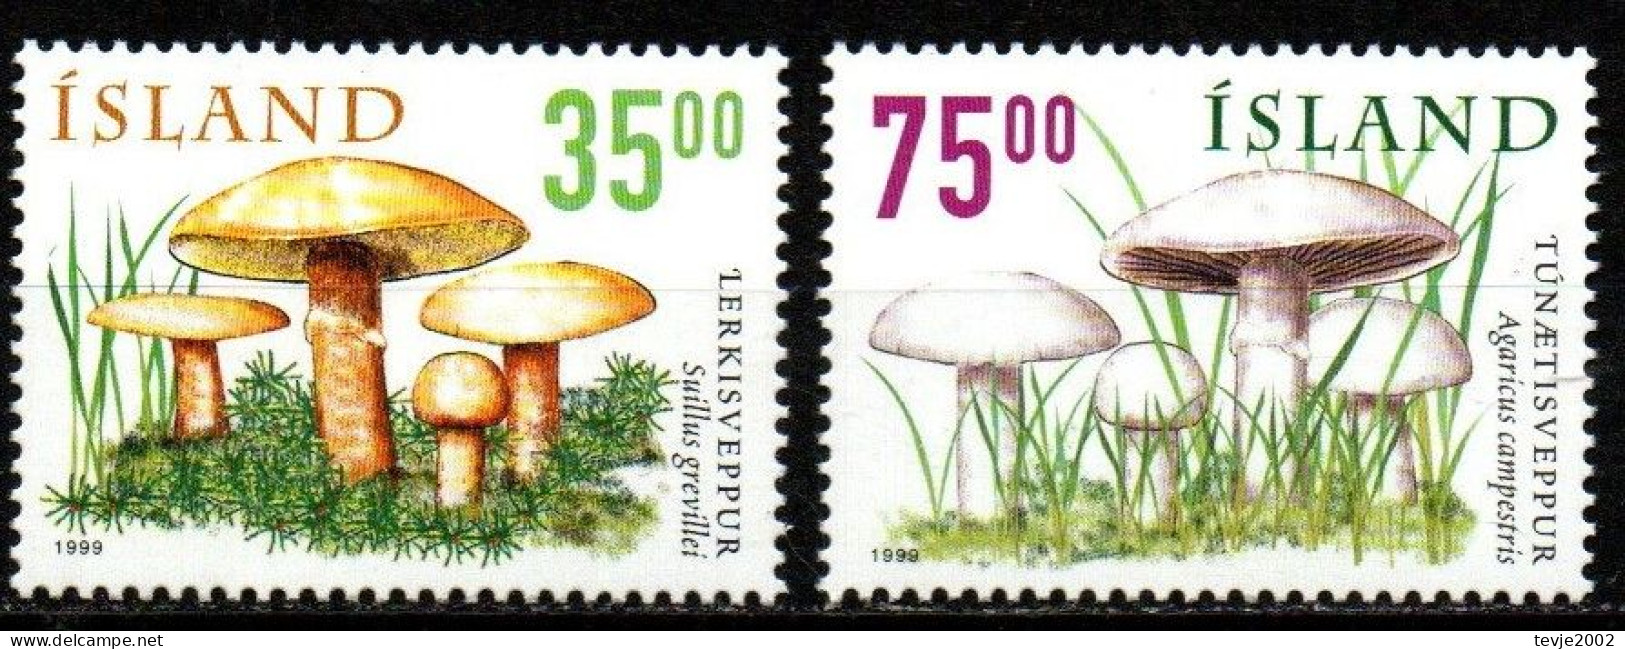 Island 1999 - Mi.Nr. 915 - 916 - Postfrisch MNH - Pilze Mushrooms - Pilze